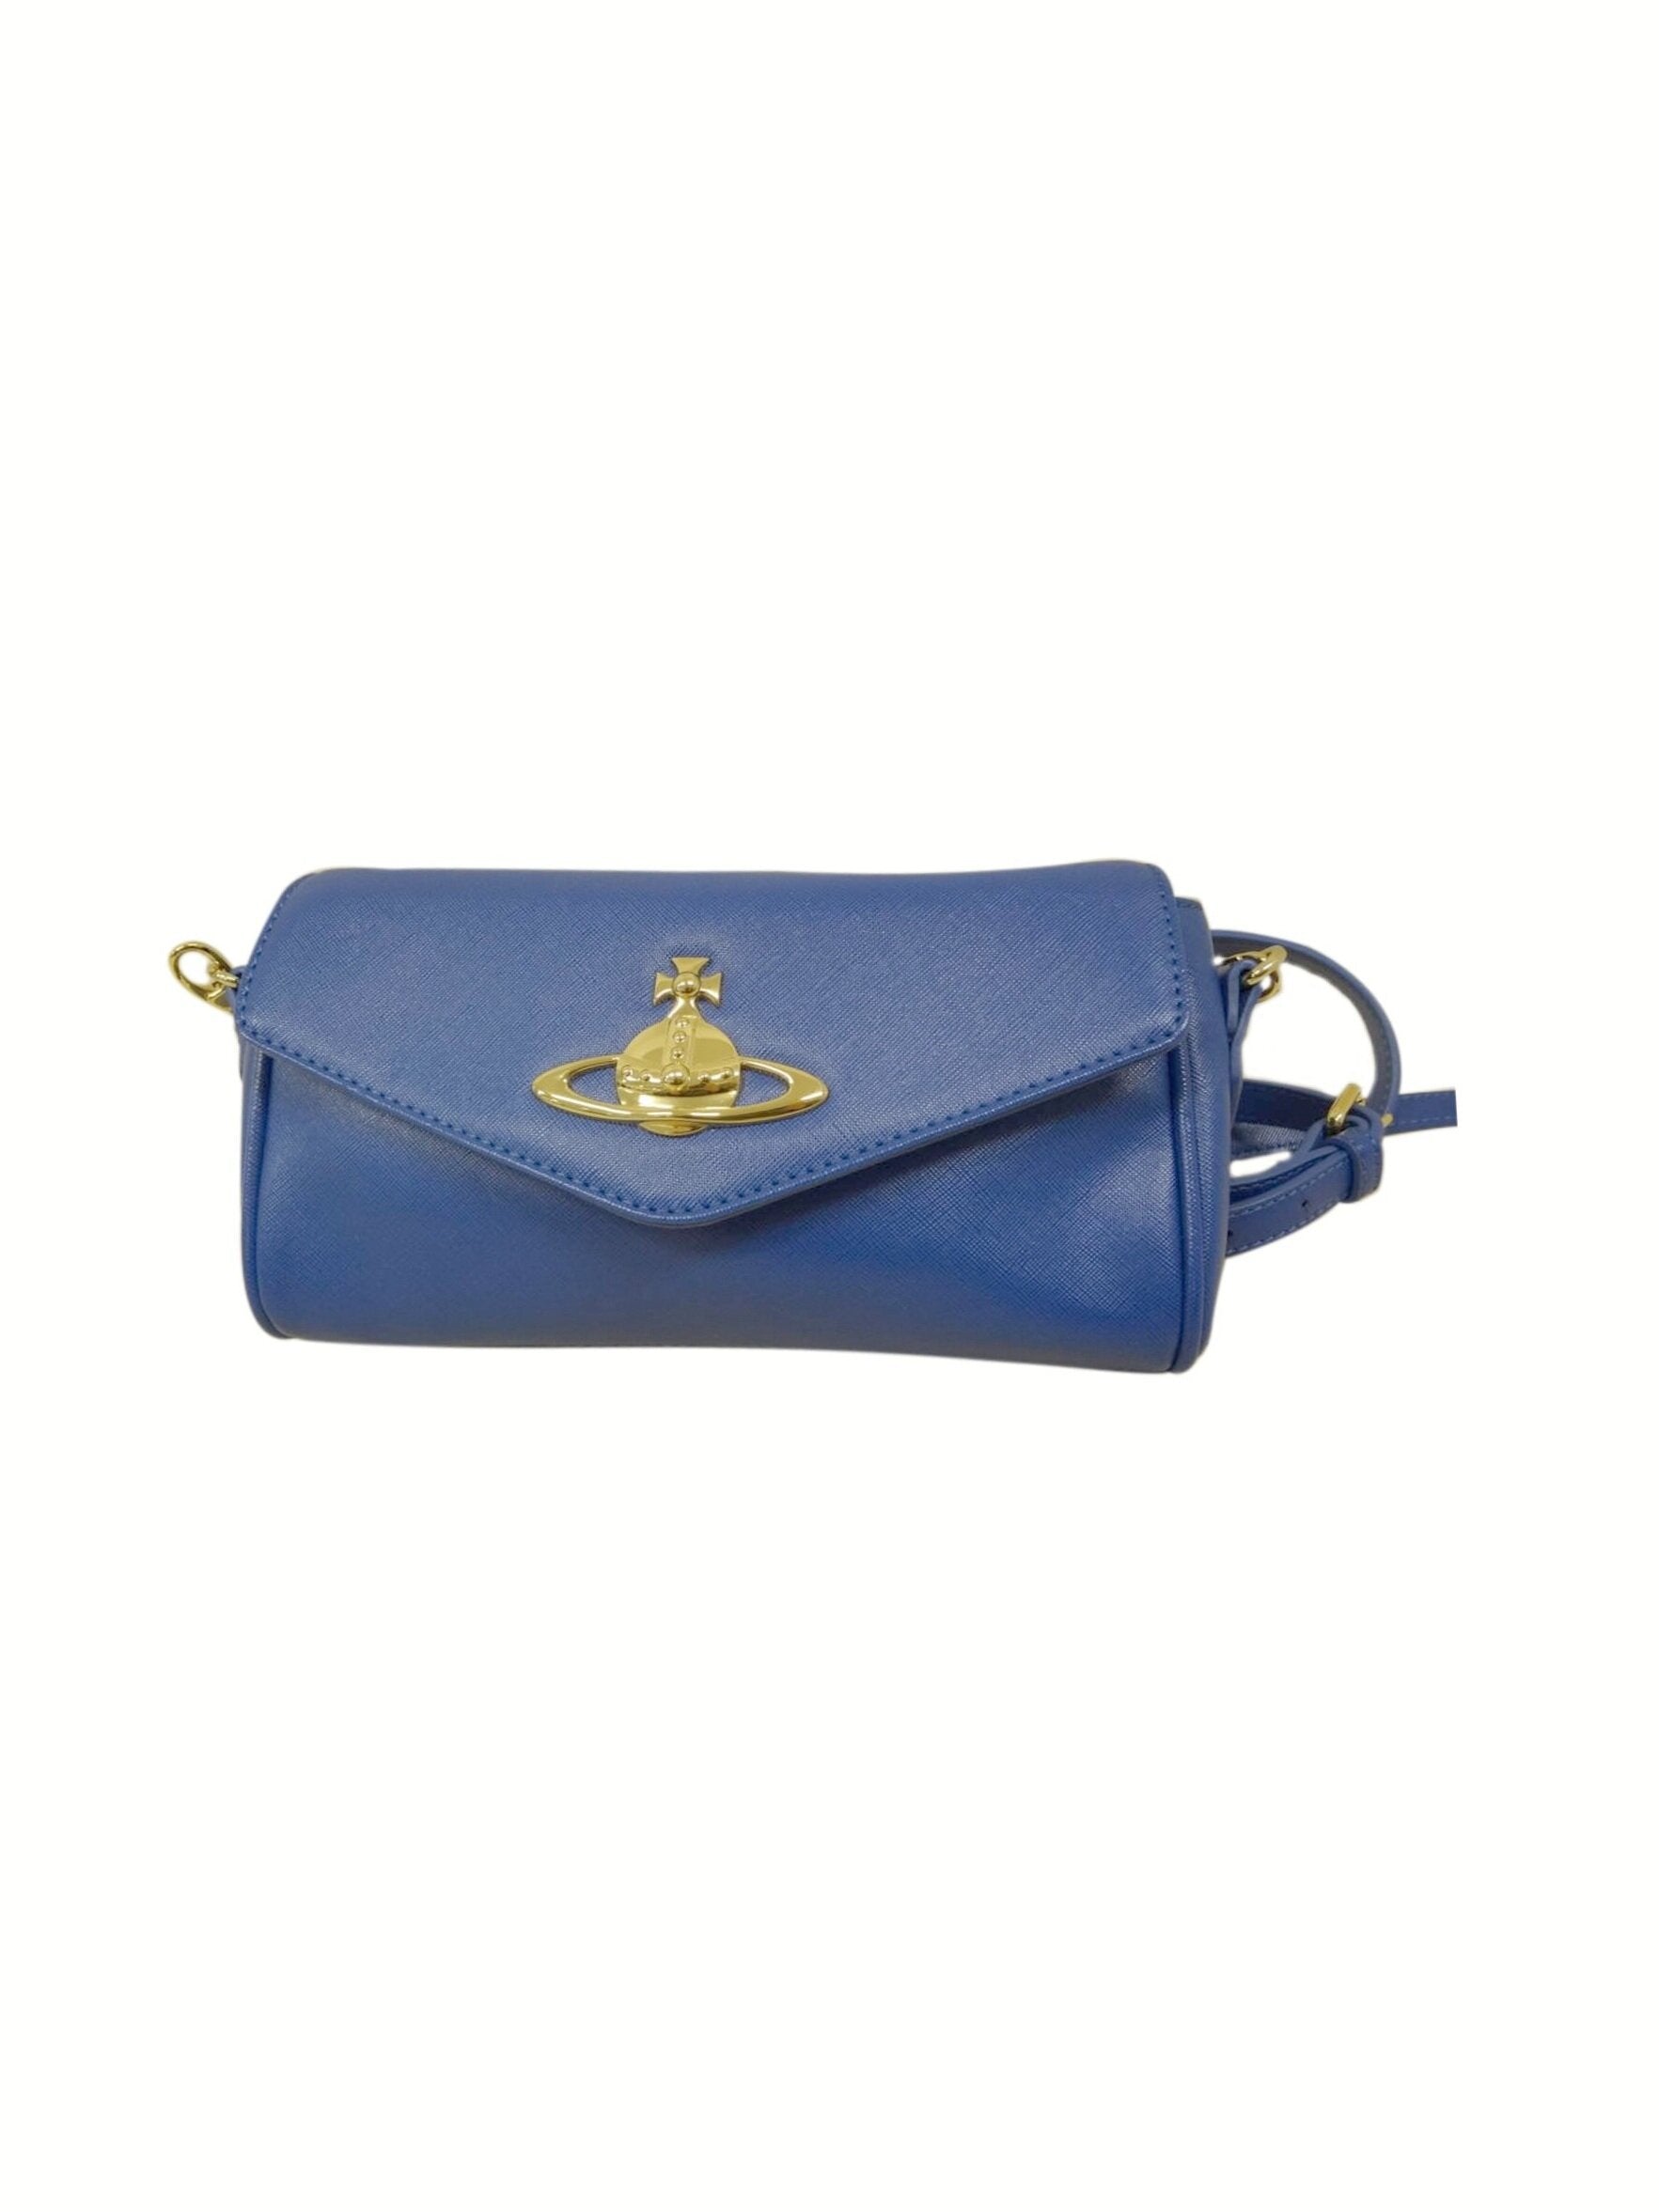 Vivienne Westwood 2000s Blue Leather Shoulder Bag